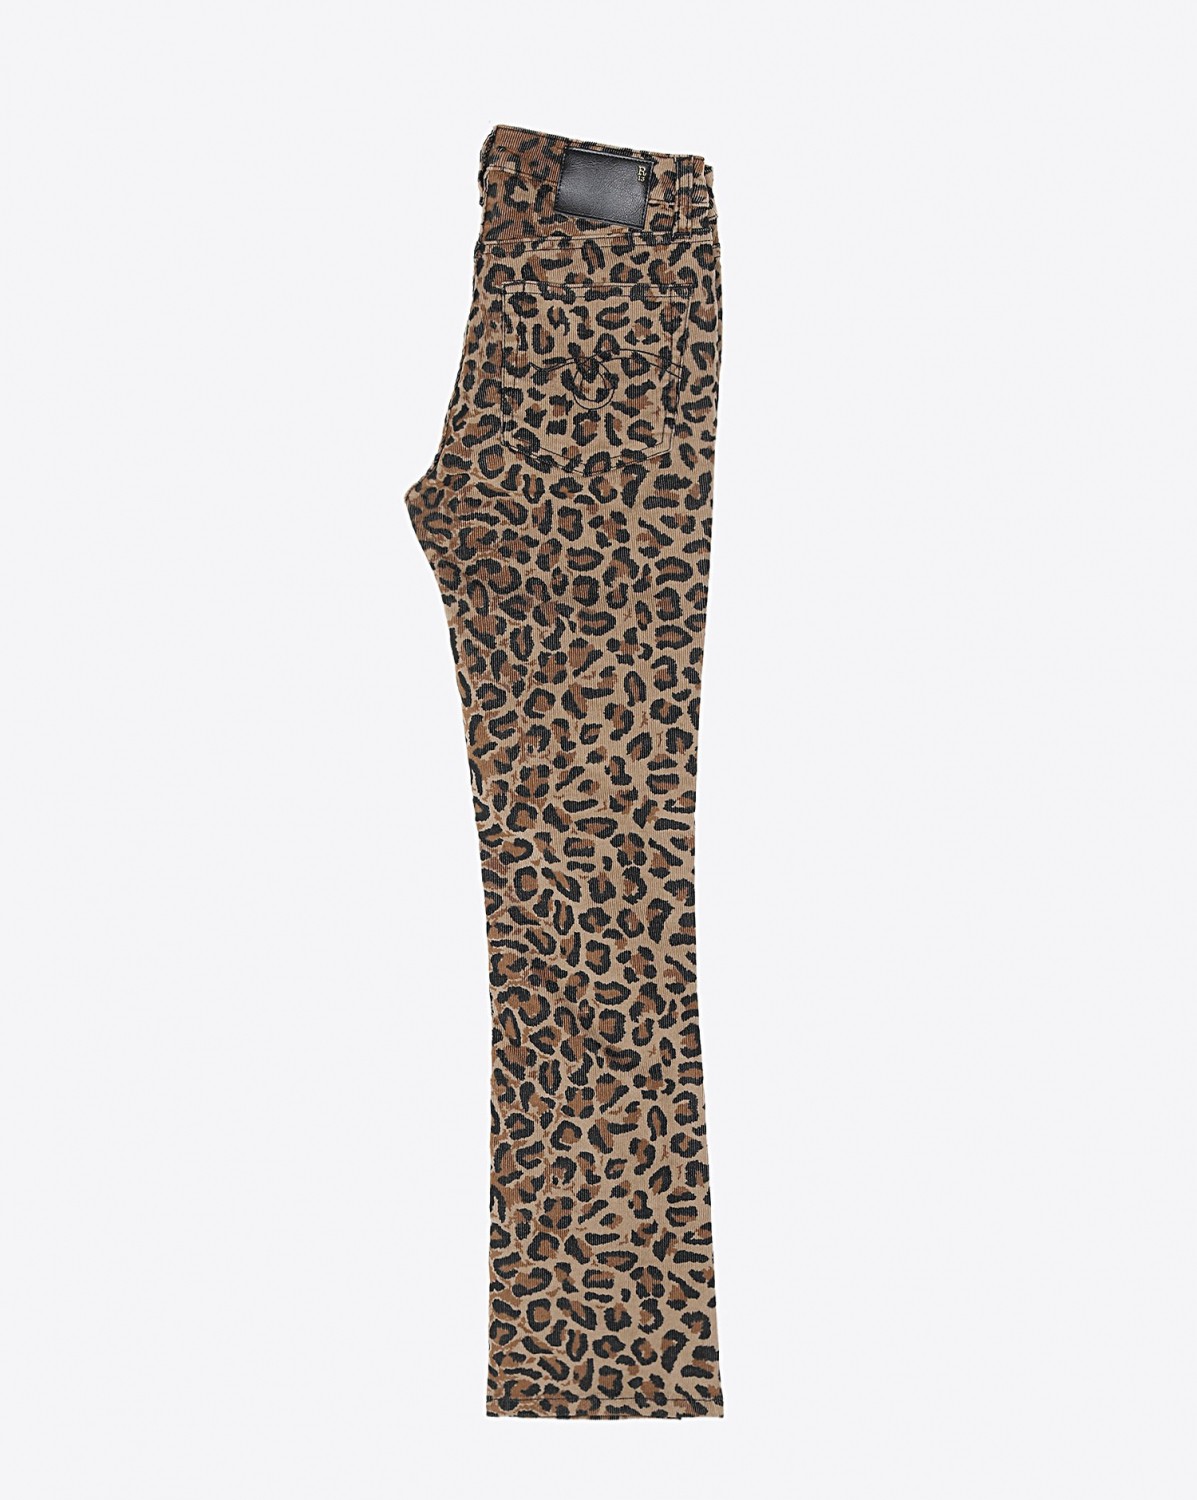 Image du produit R13 Denim Collection Kick Fit - Tan Leopard  - porté